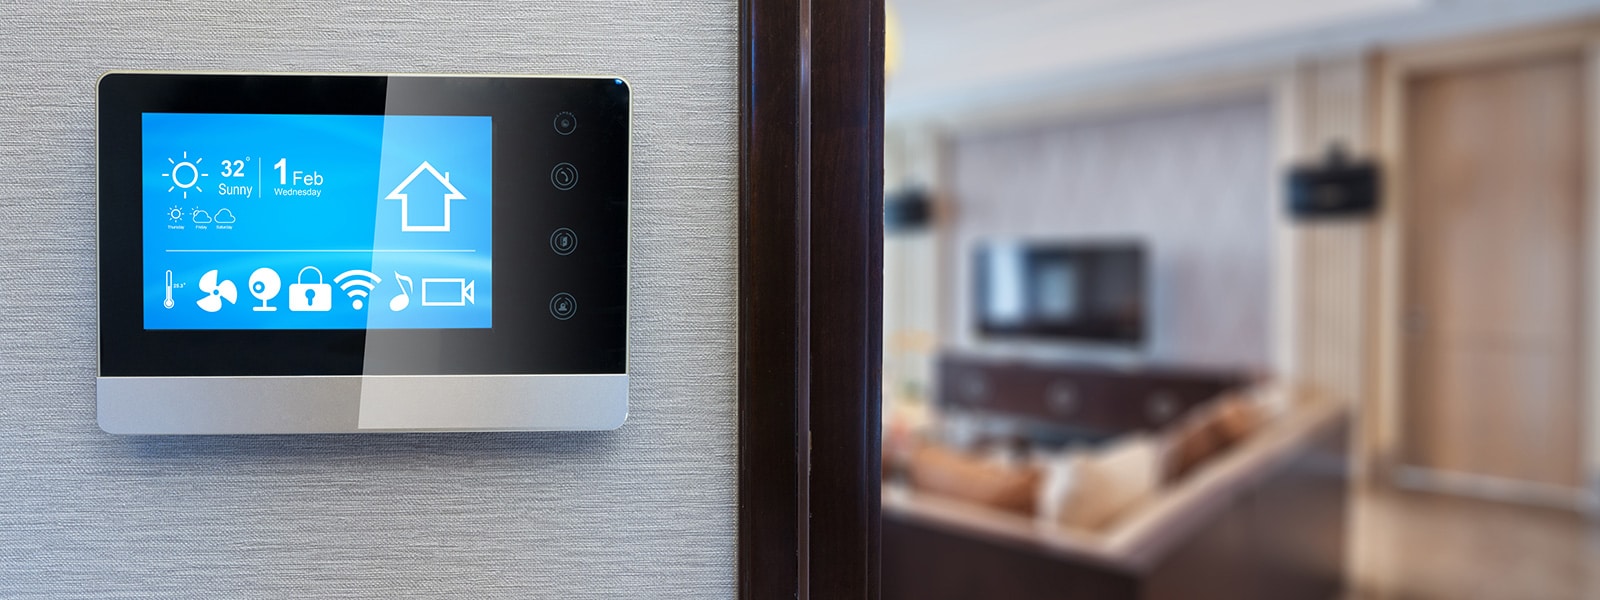 Millennial smart home technology